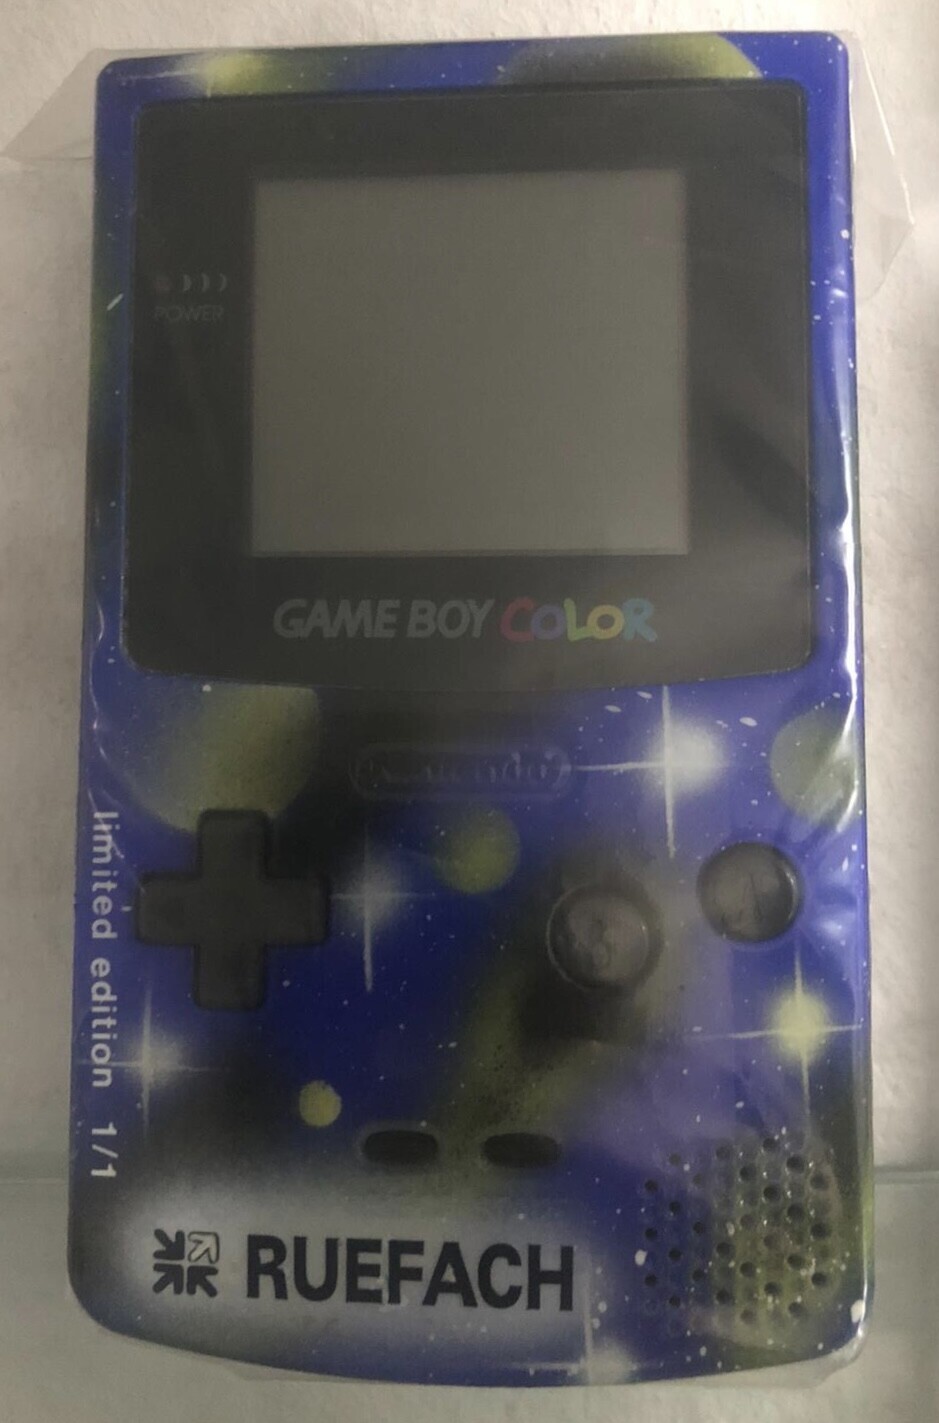  Nintendo Game Boy Color Ruefach Console